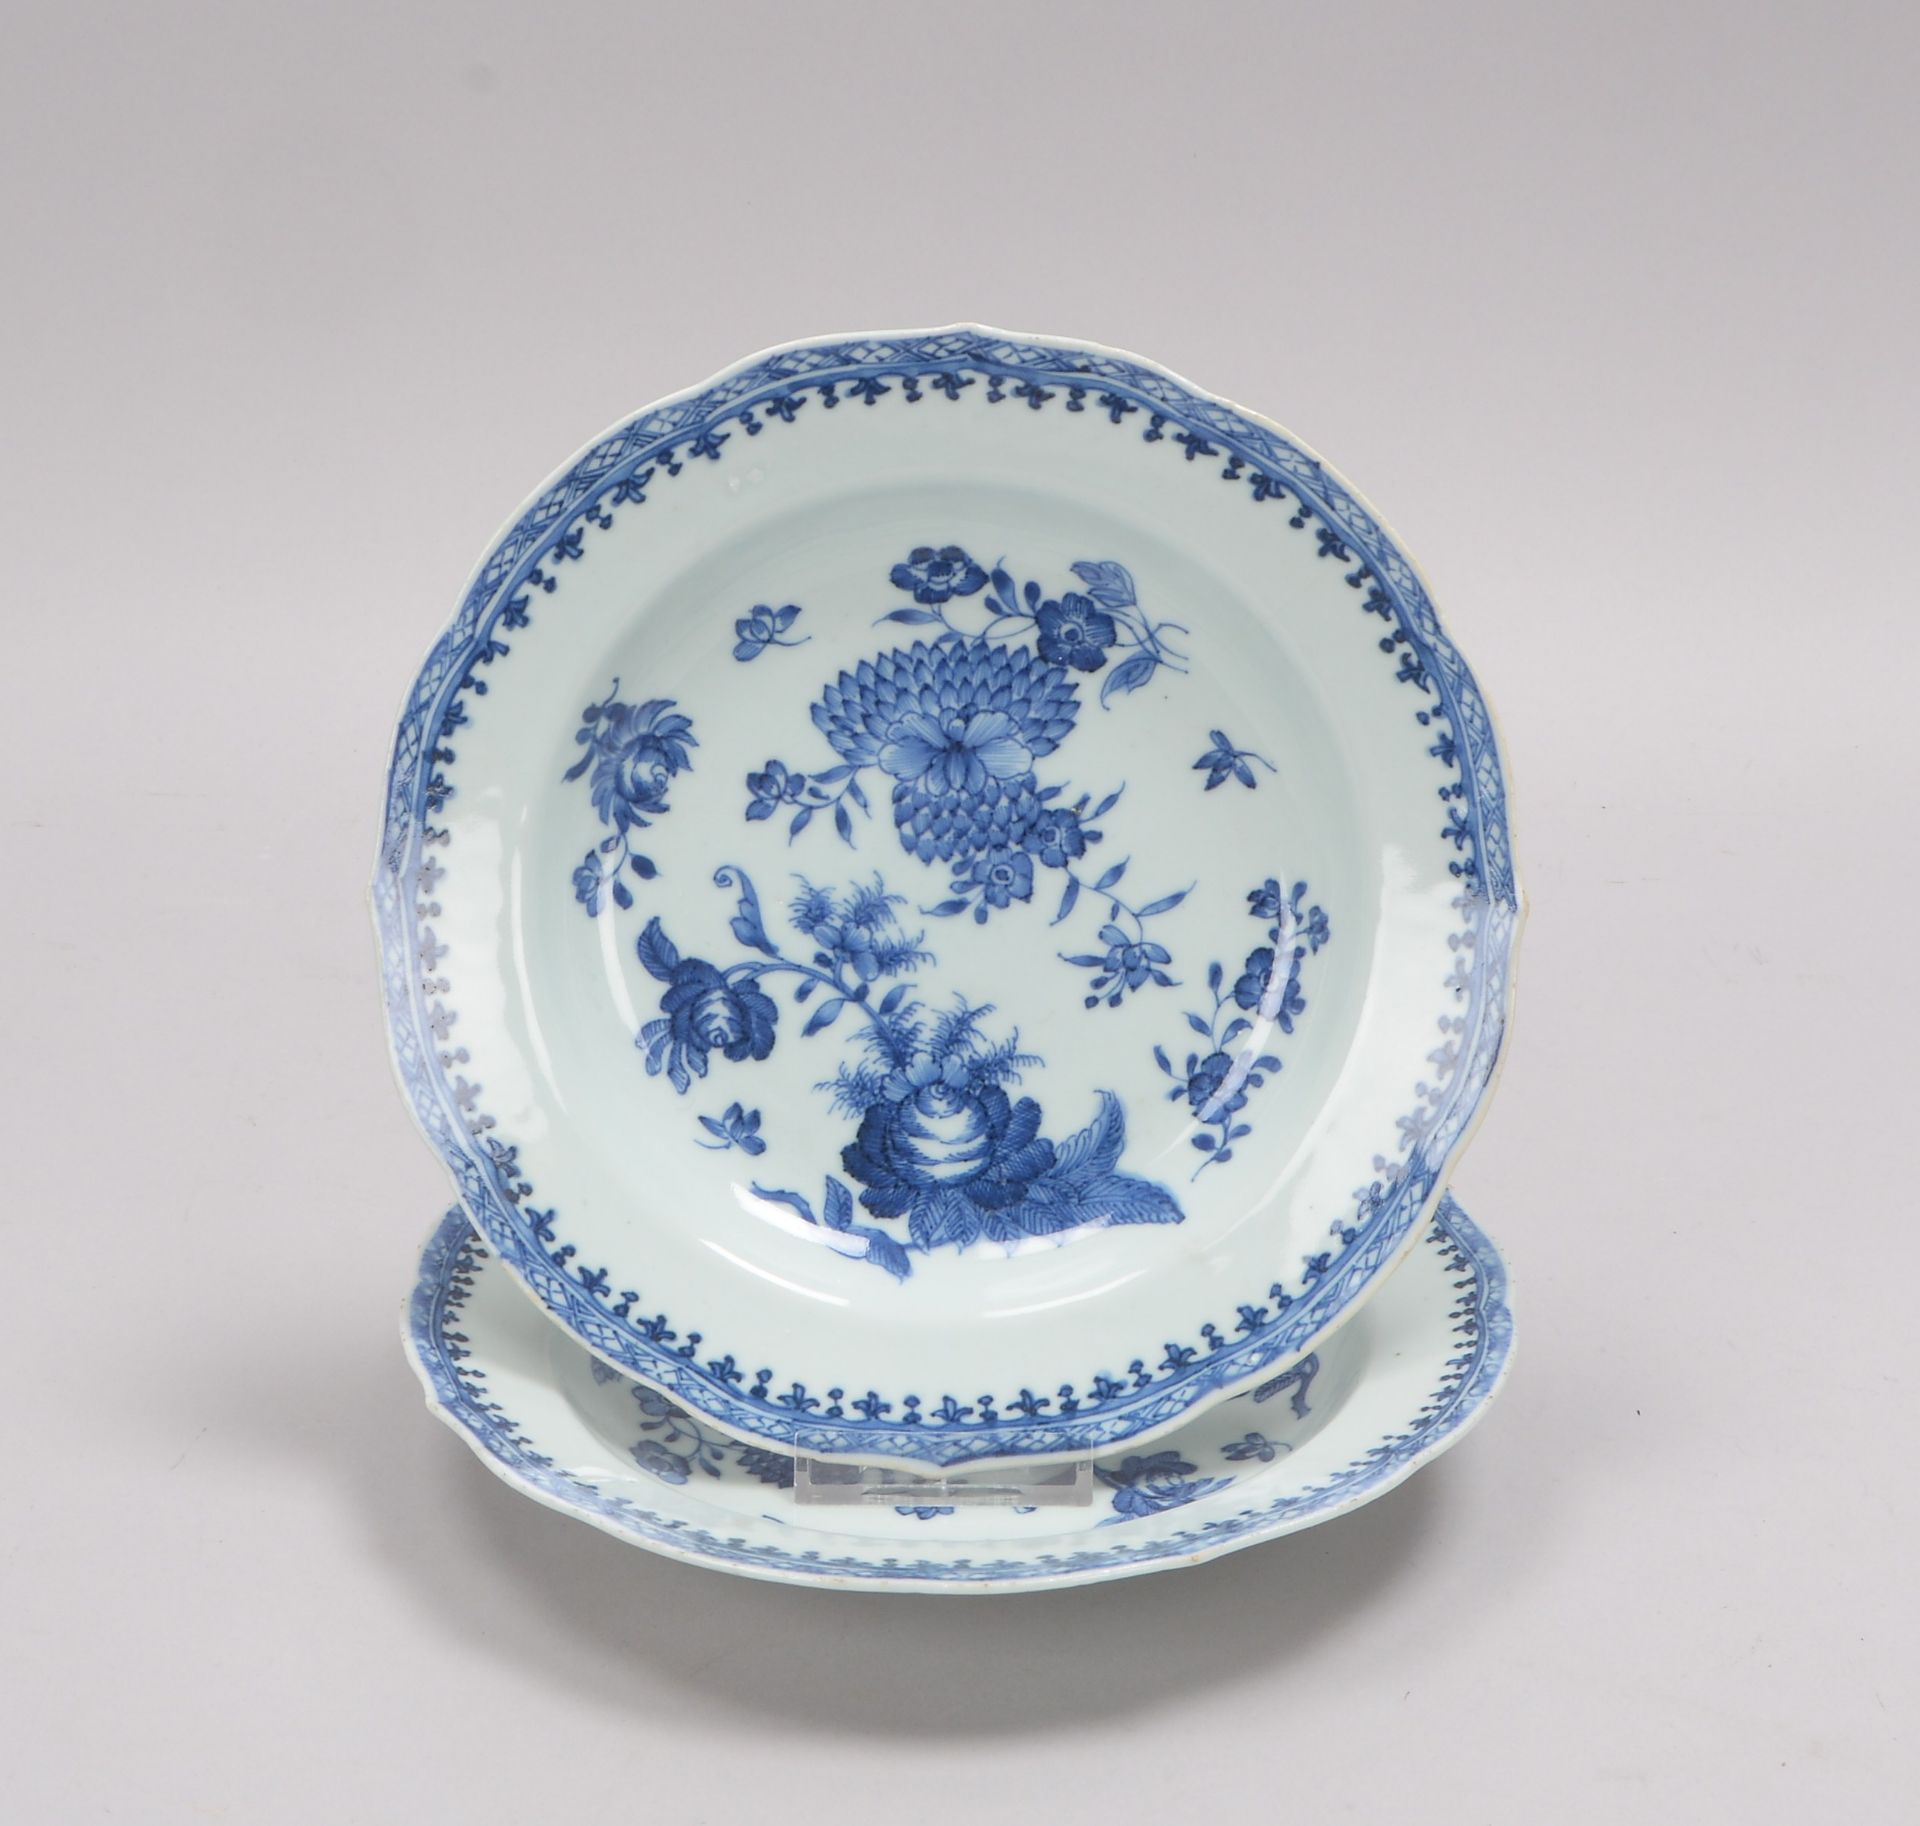 Paar Porzellanteller (China, wohl 18. Jahrhundert), mit Unterglasurdekor in Blau (Blumenmotive)